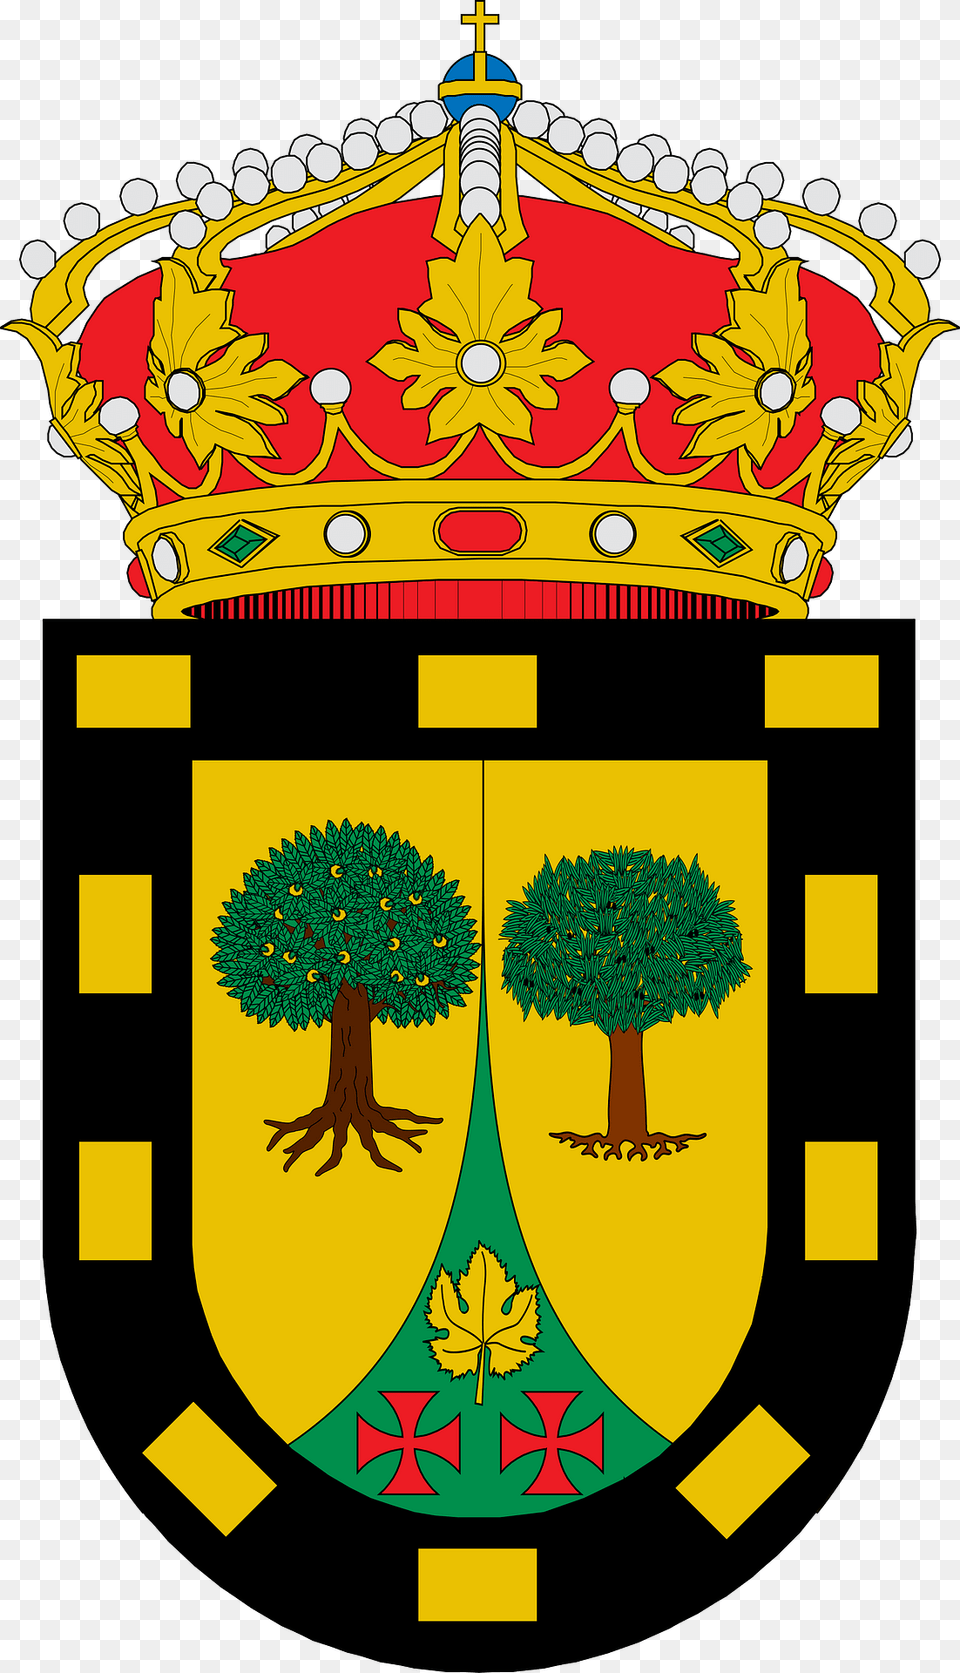 Escudo De Ombra Clipart, Plant, Emblem, Symbol Png Image